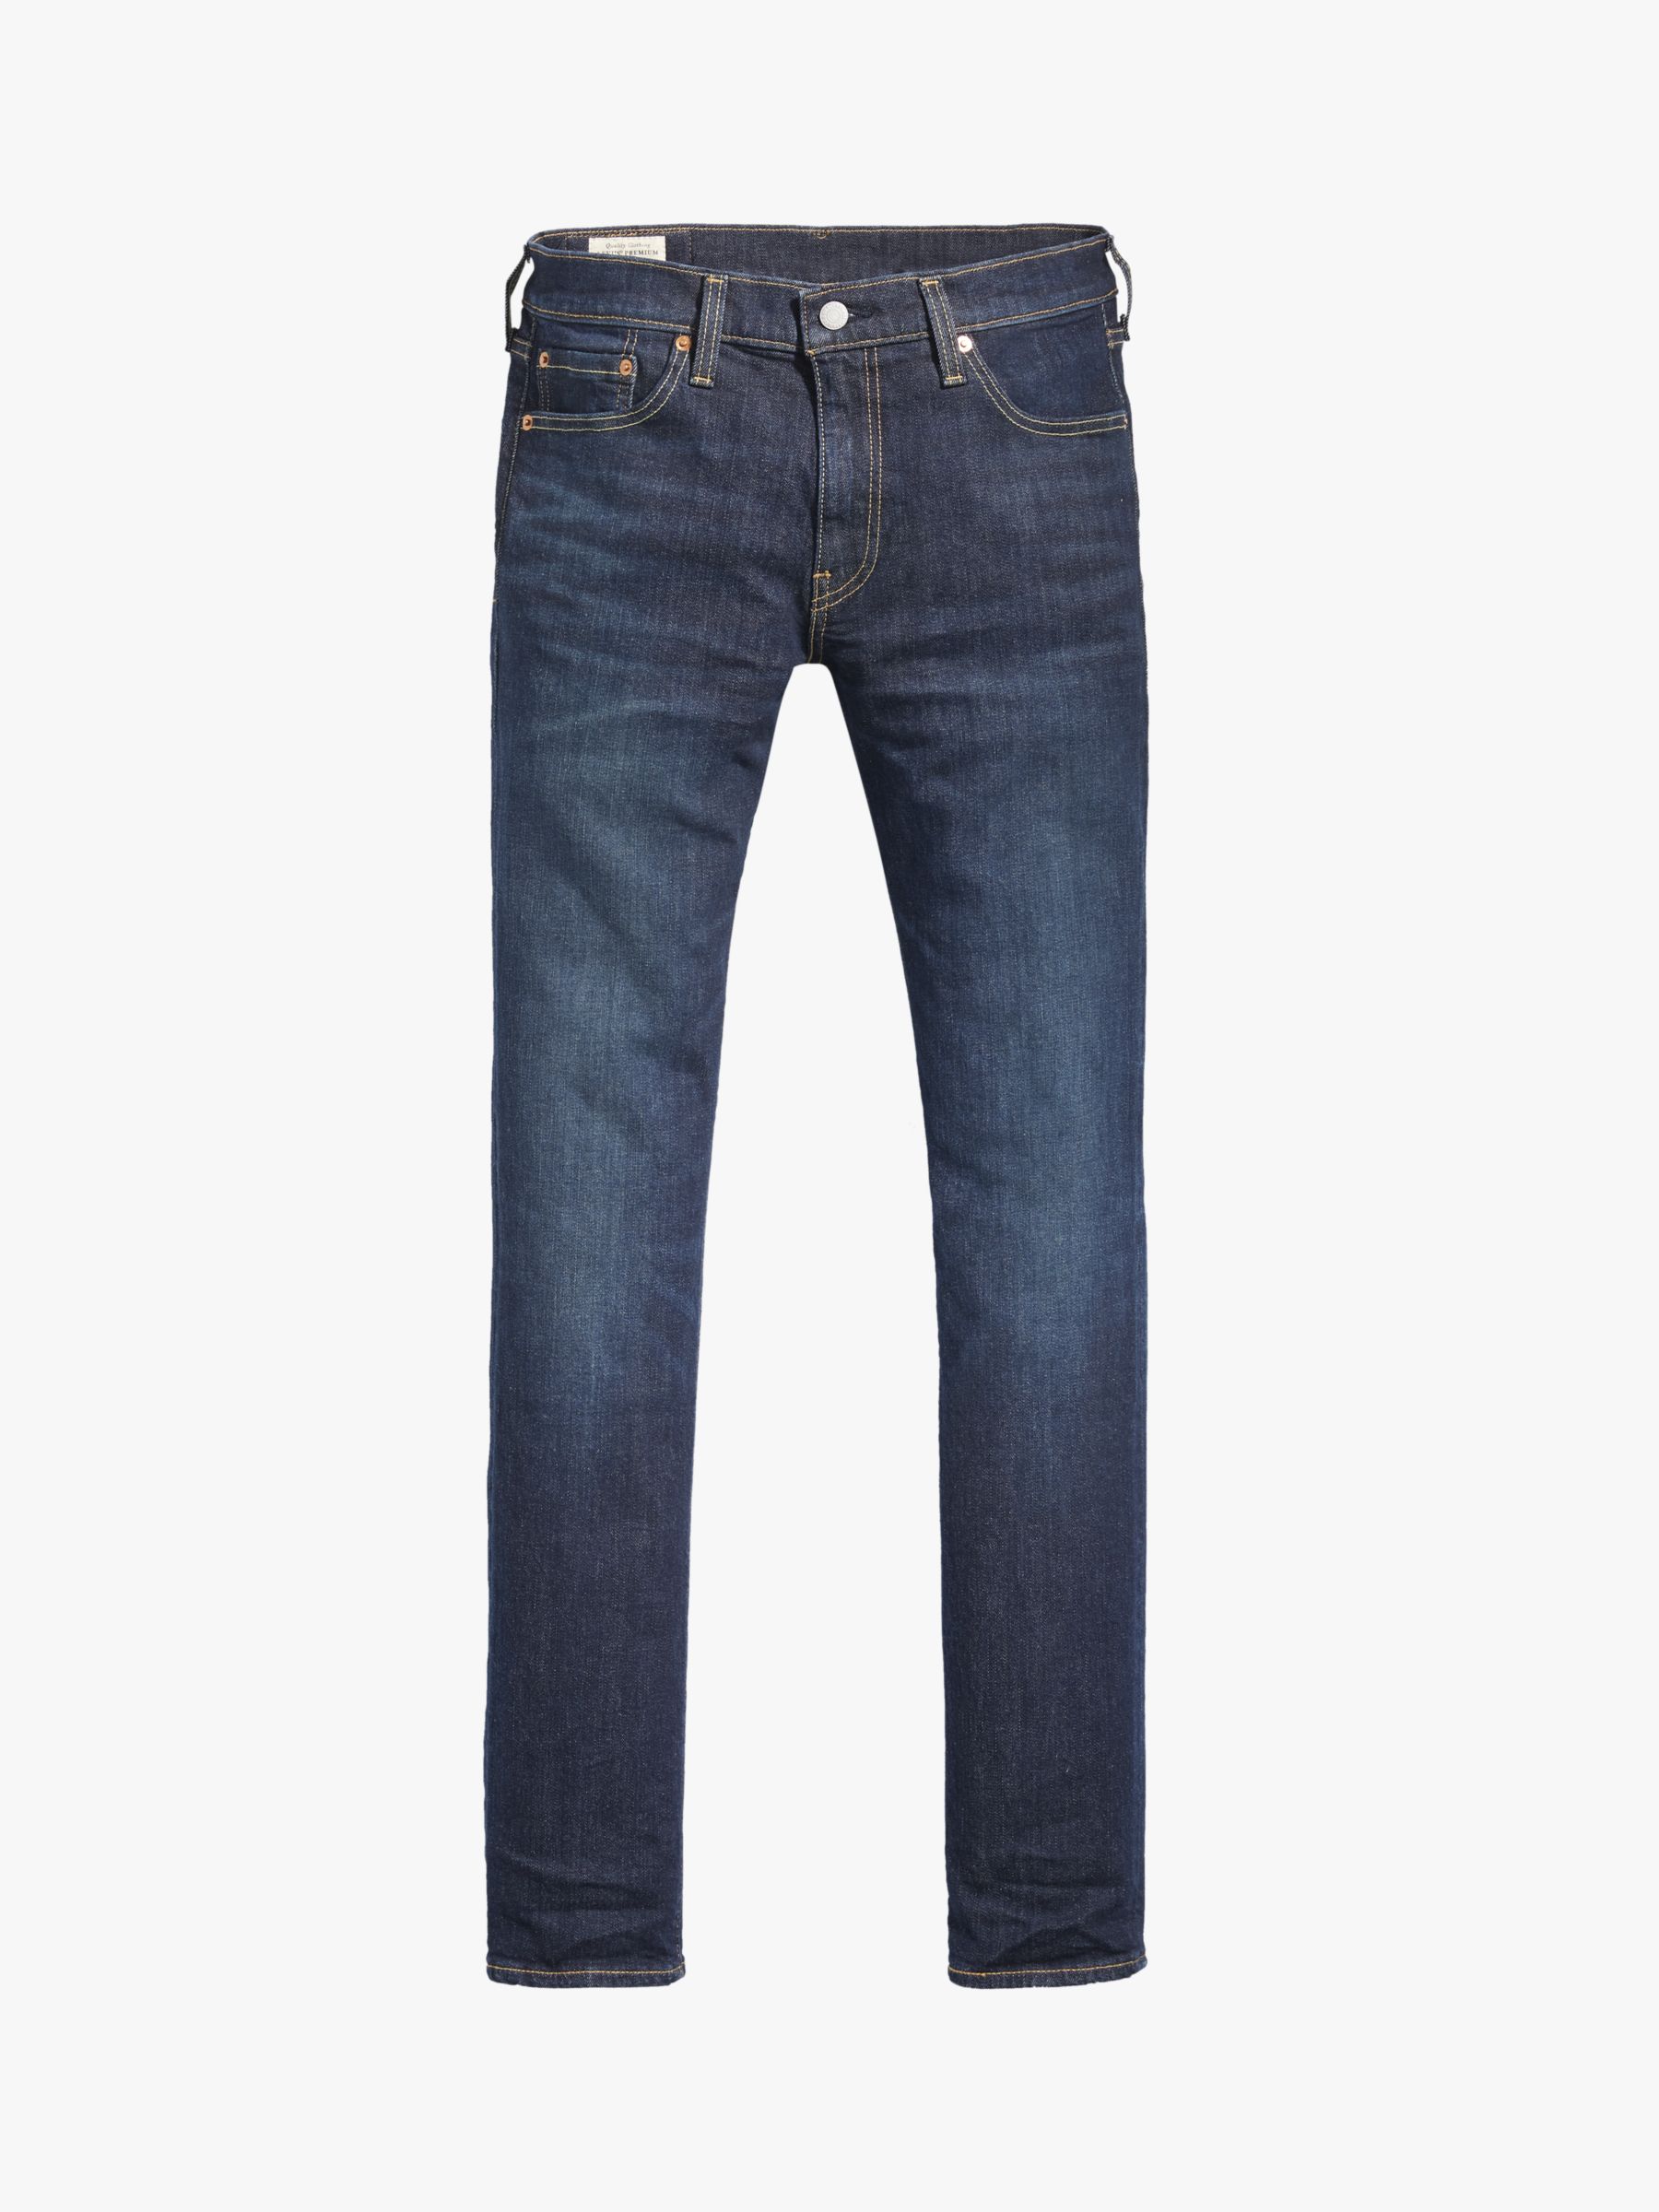 Levi's 511 Slim Fit Jeans, Biologia Adv, W30/L30